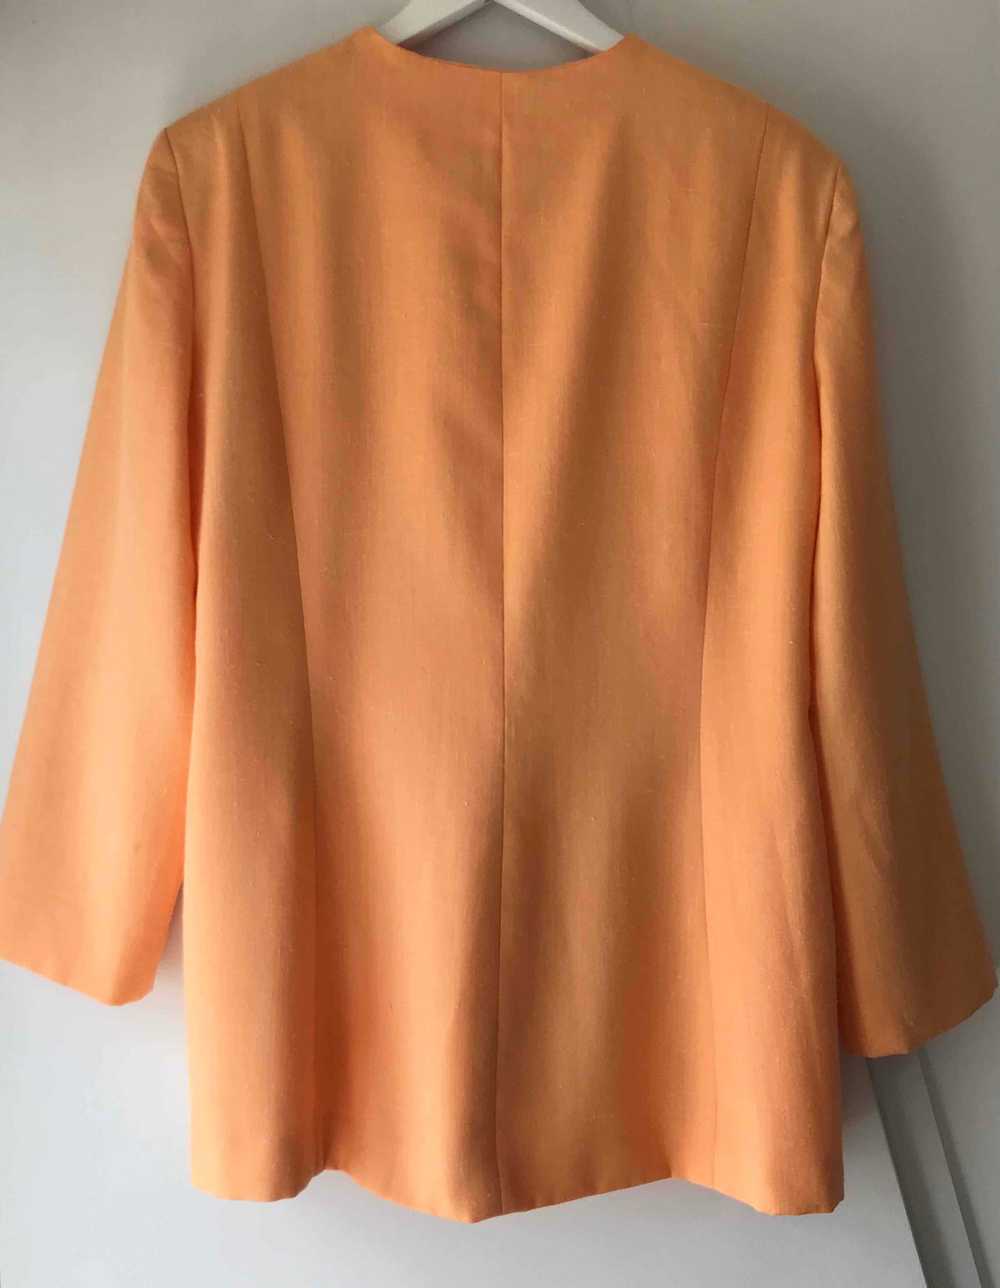 Veste longue en lin - Belle veste abricot en lin - image 3